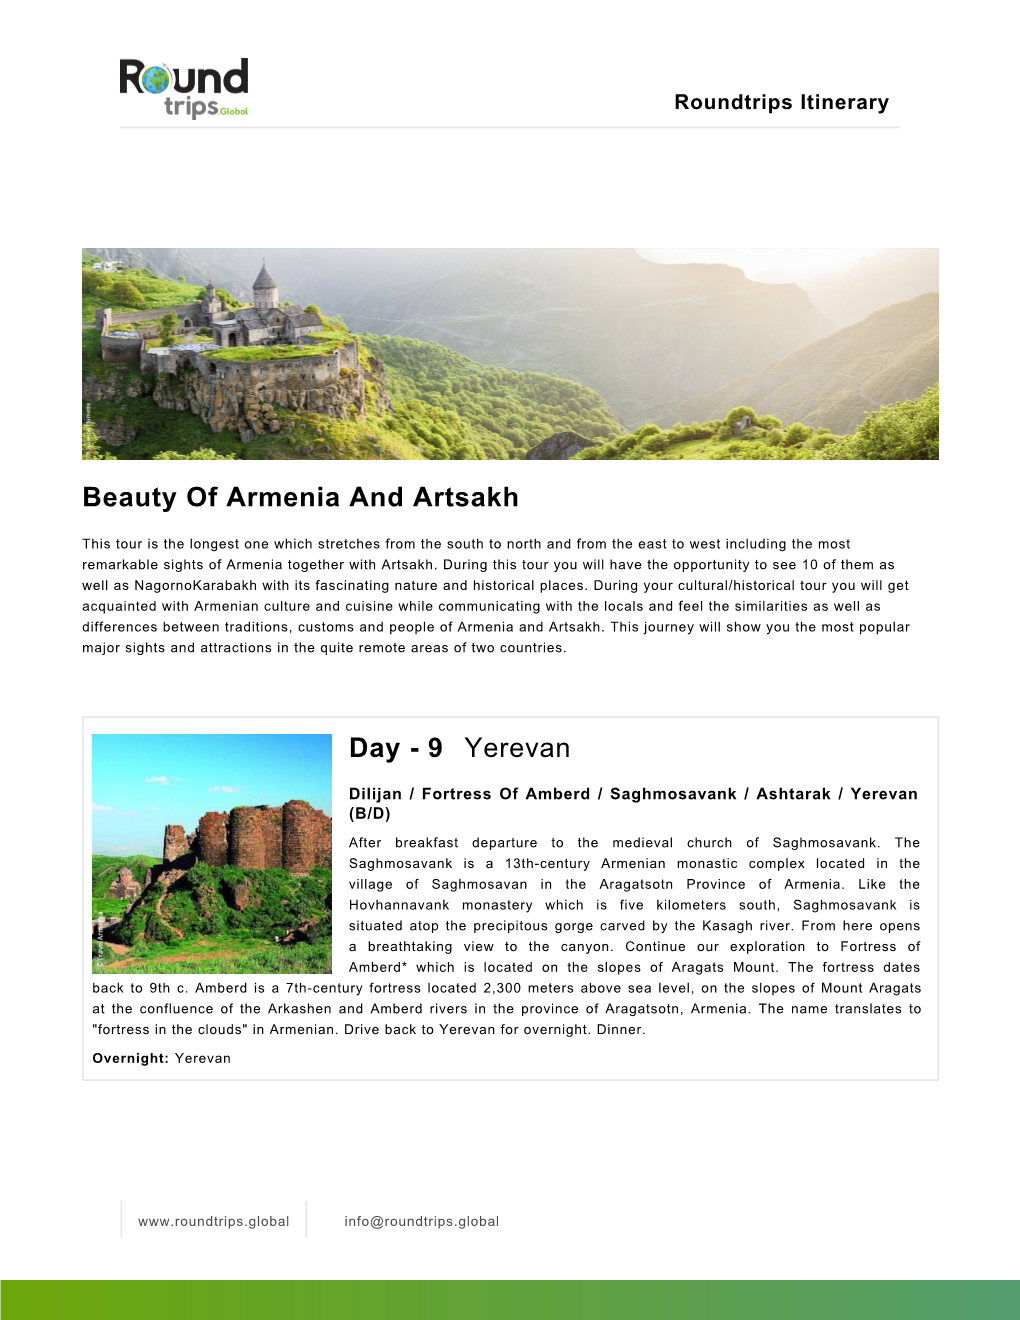 Beauty of Armenia and Artsakh